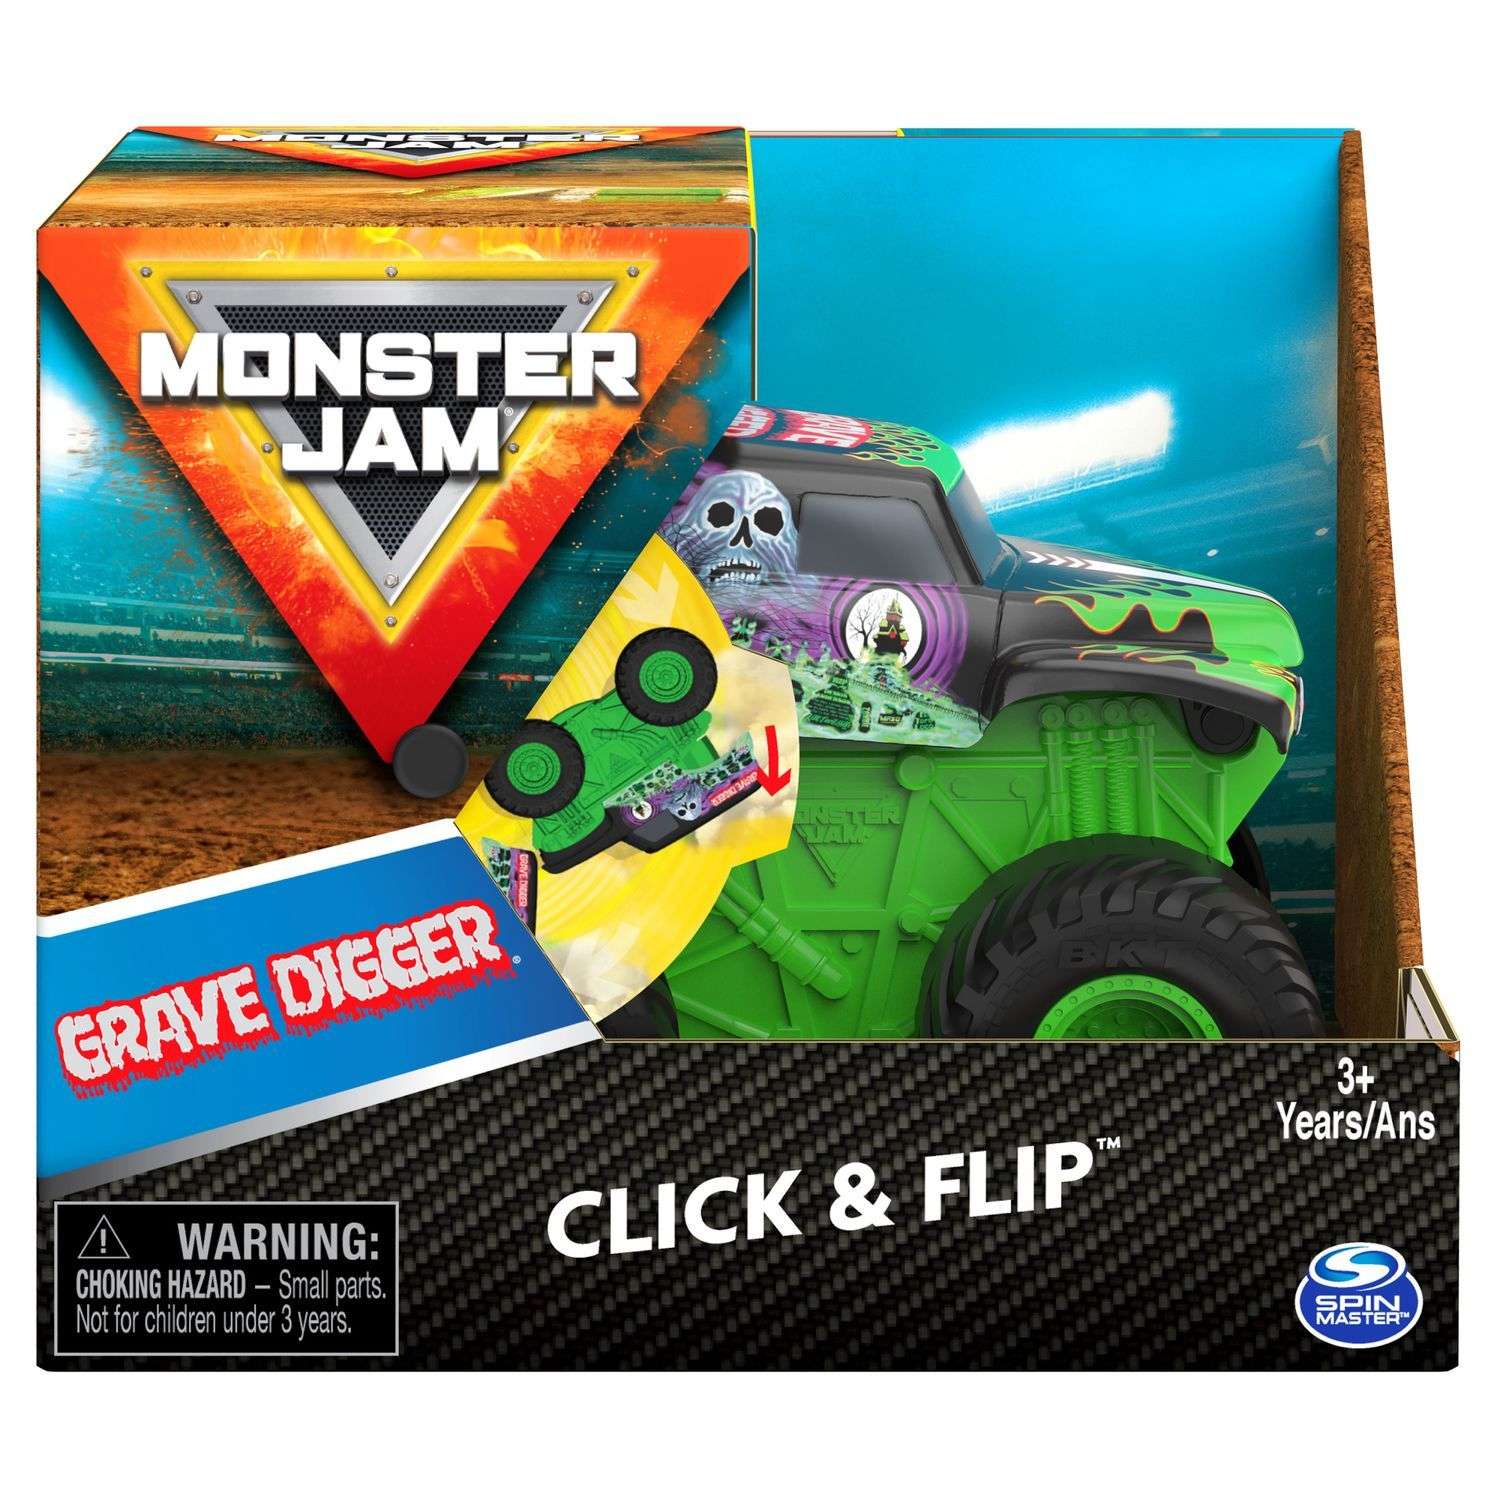 Машинка Monster Jam 1:43 Grave Digger инновационная 6061554 6061554 - фото 2